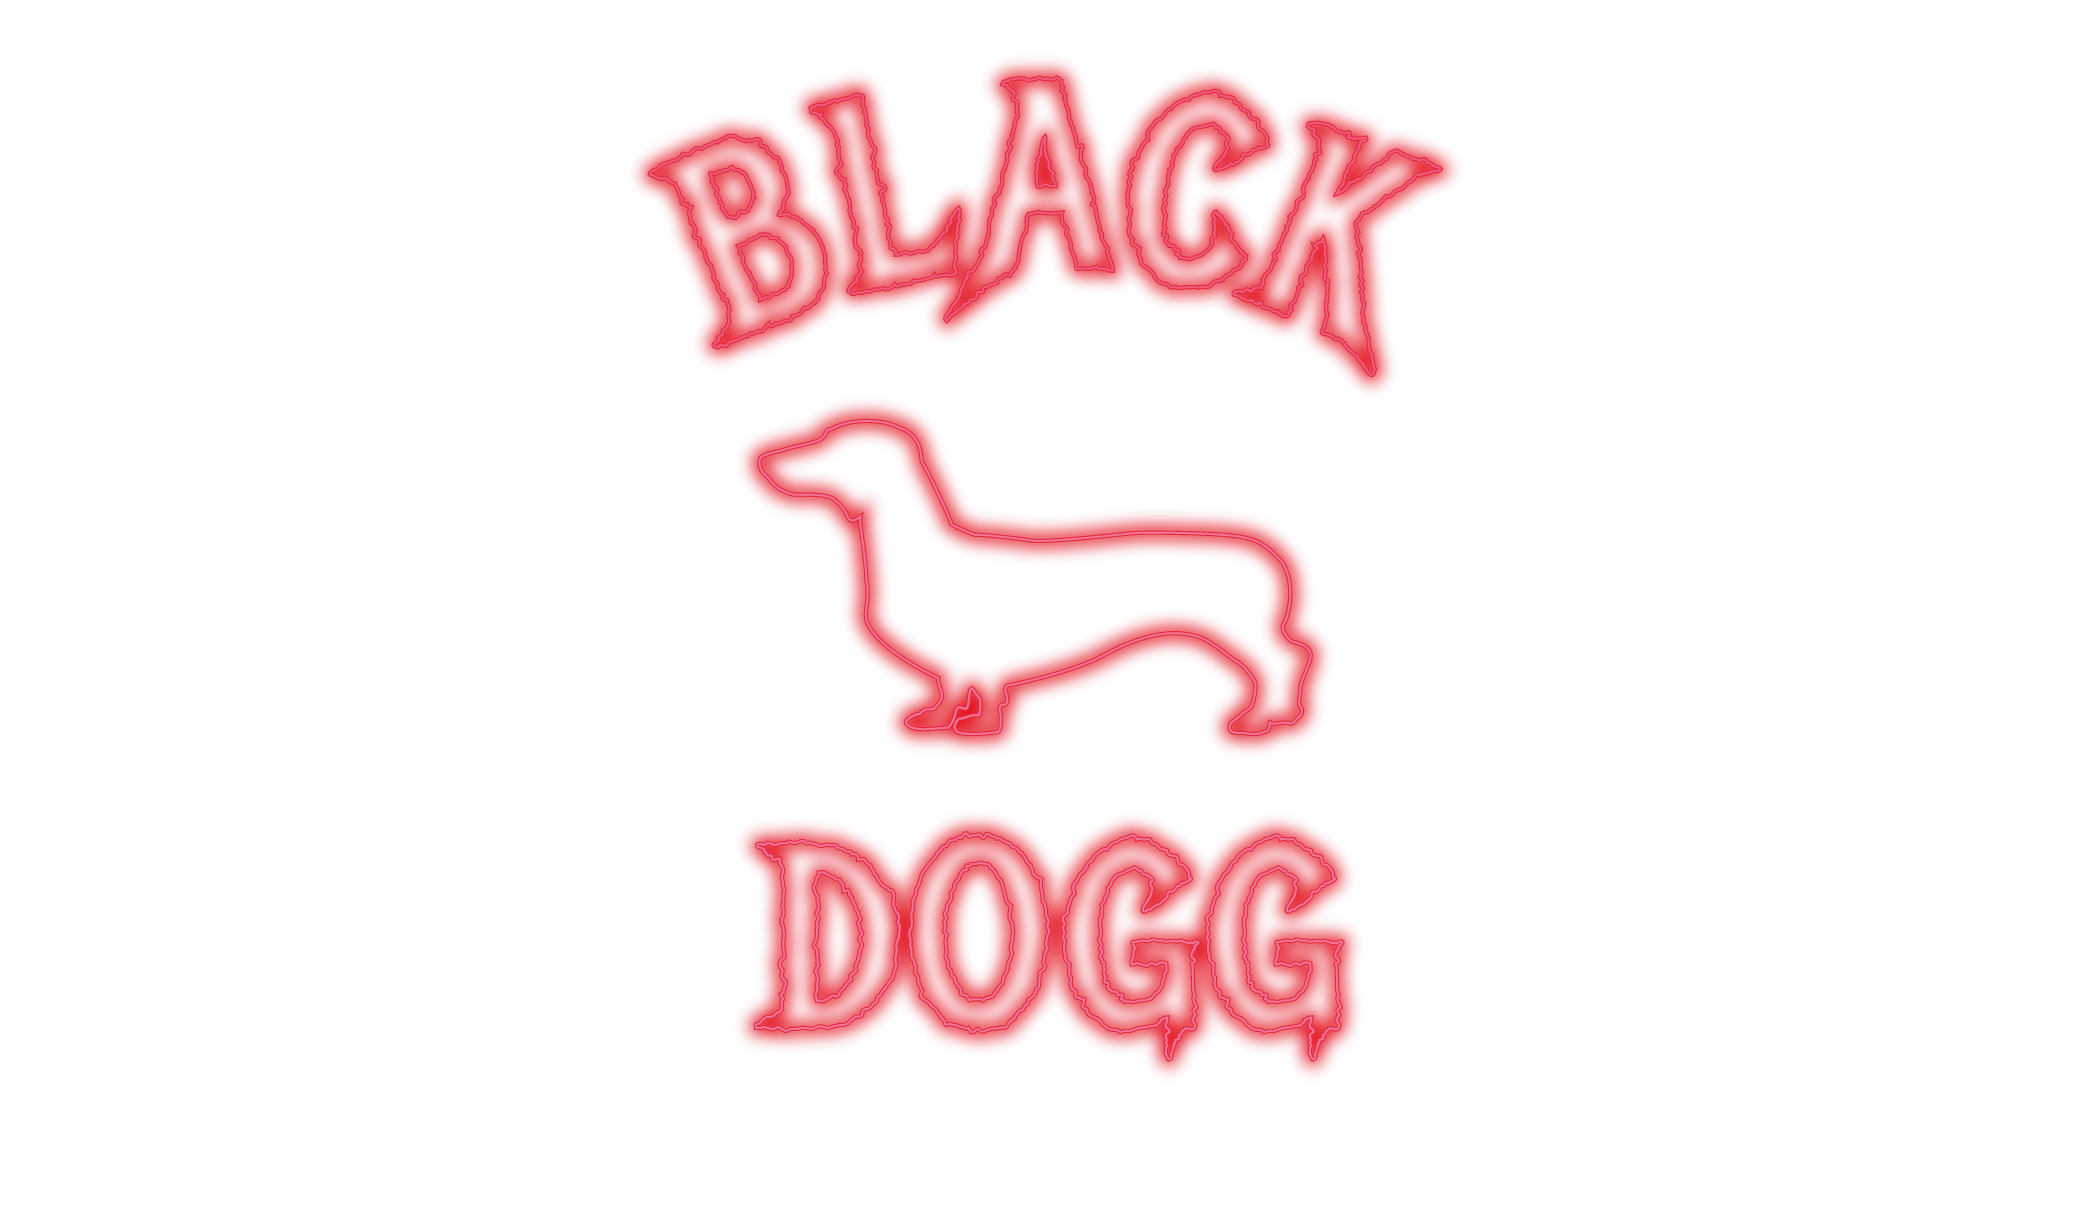 Logo blackdogg